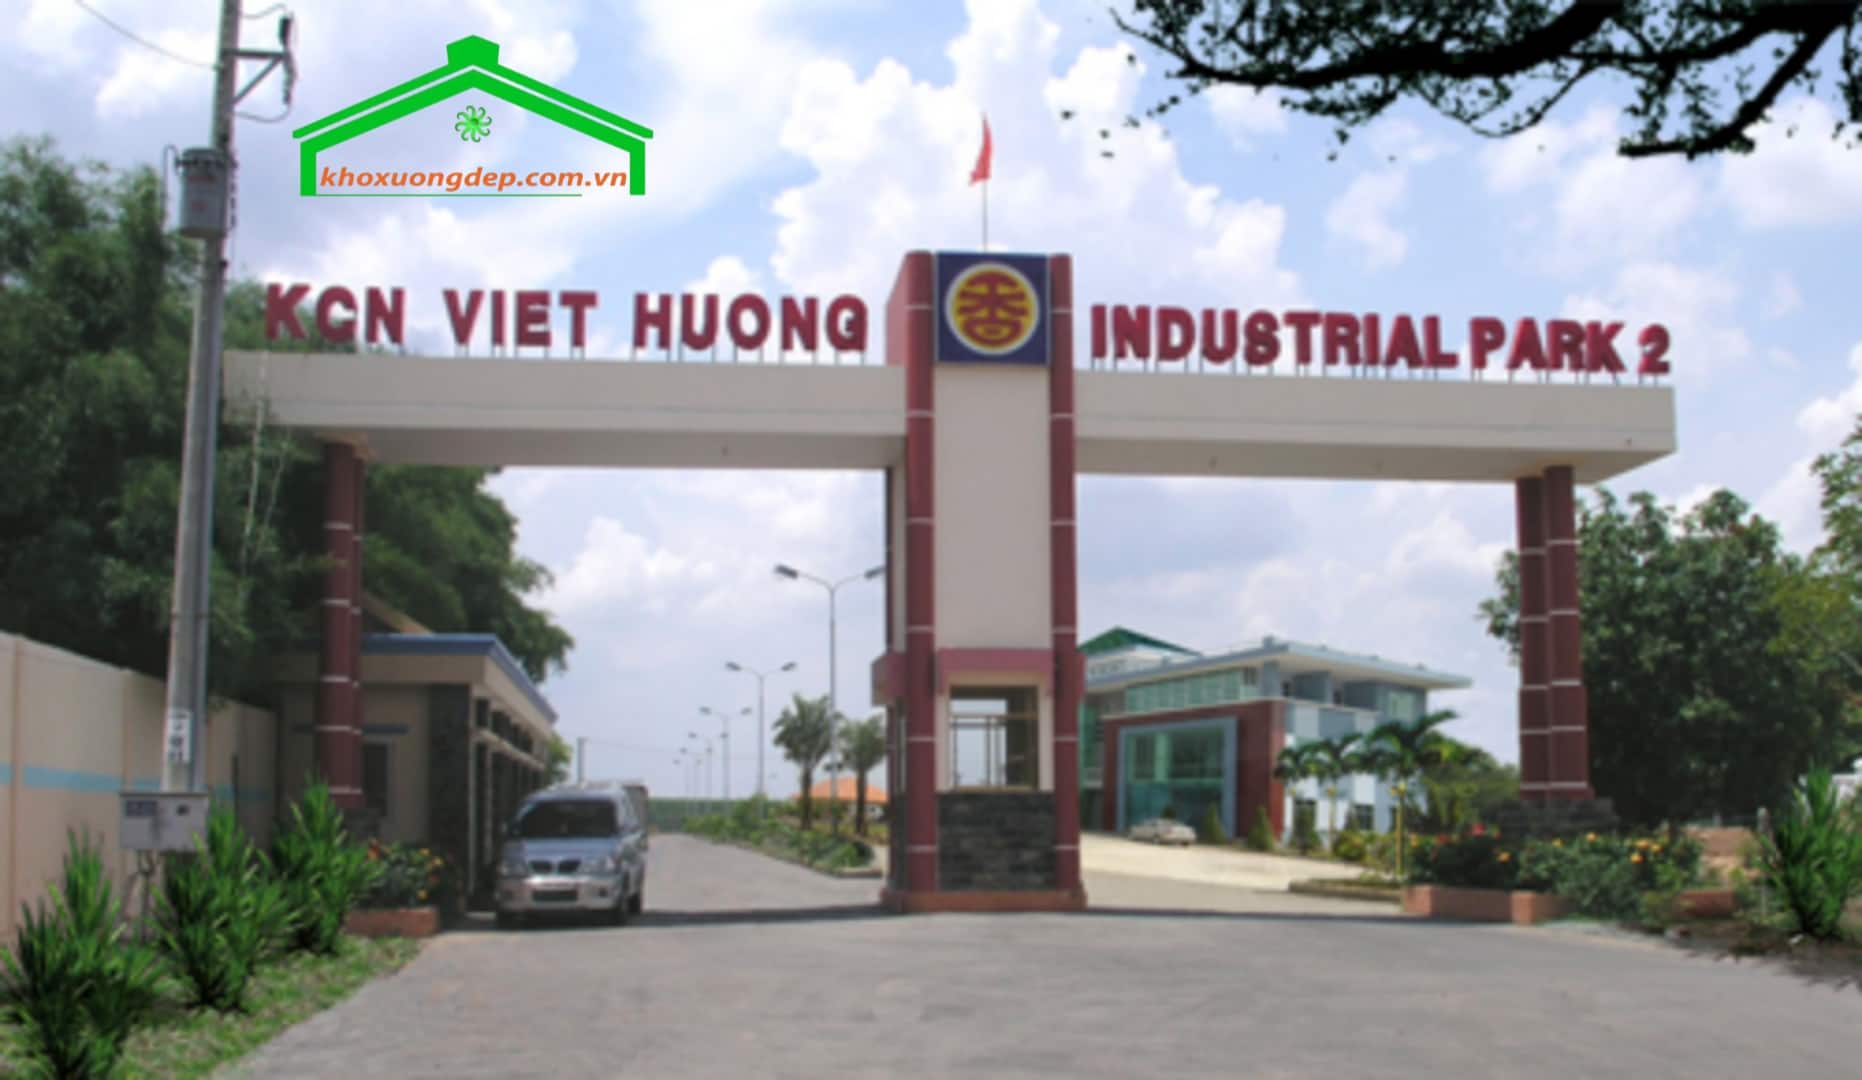 Tổng hợp tất cả thông tin về khu công nghiệp Việt Hương 2